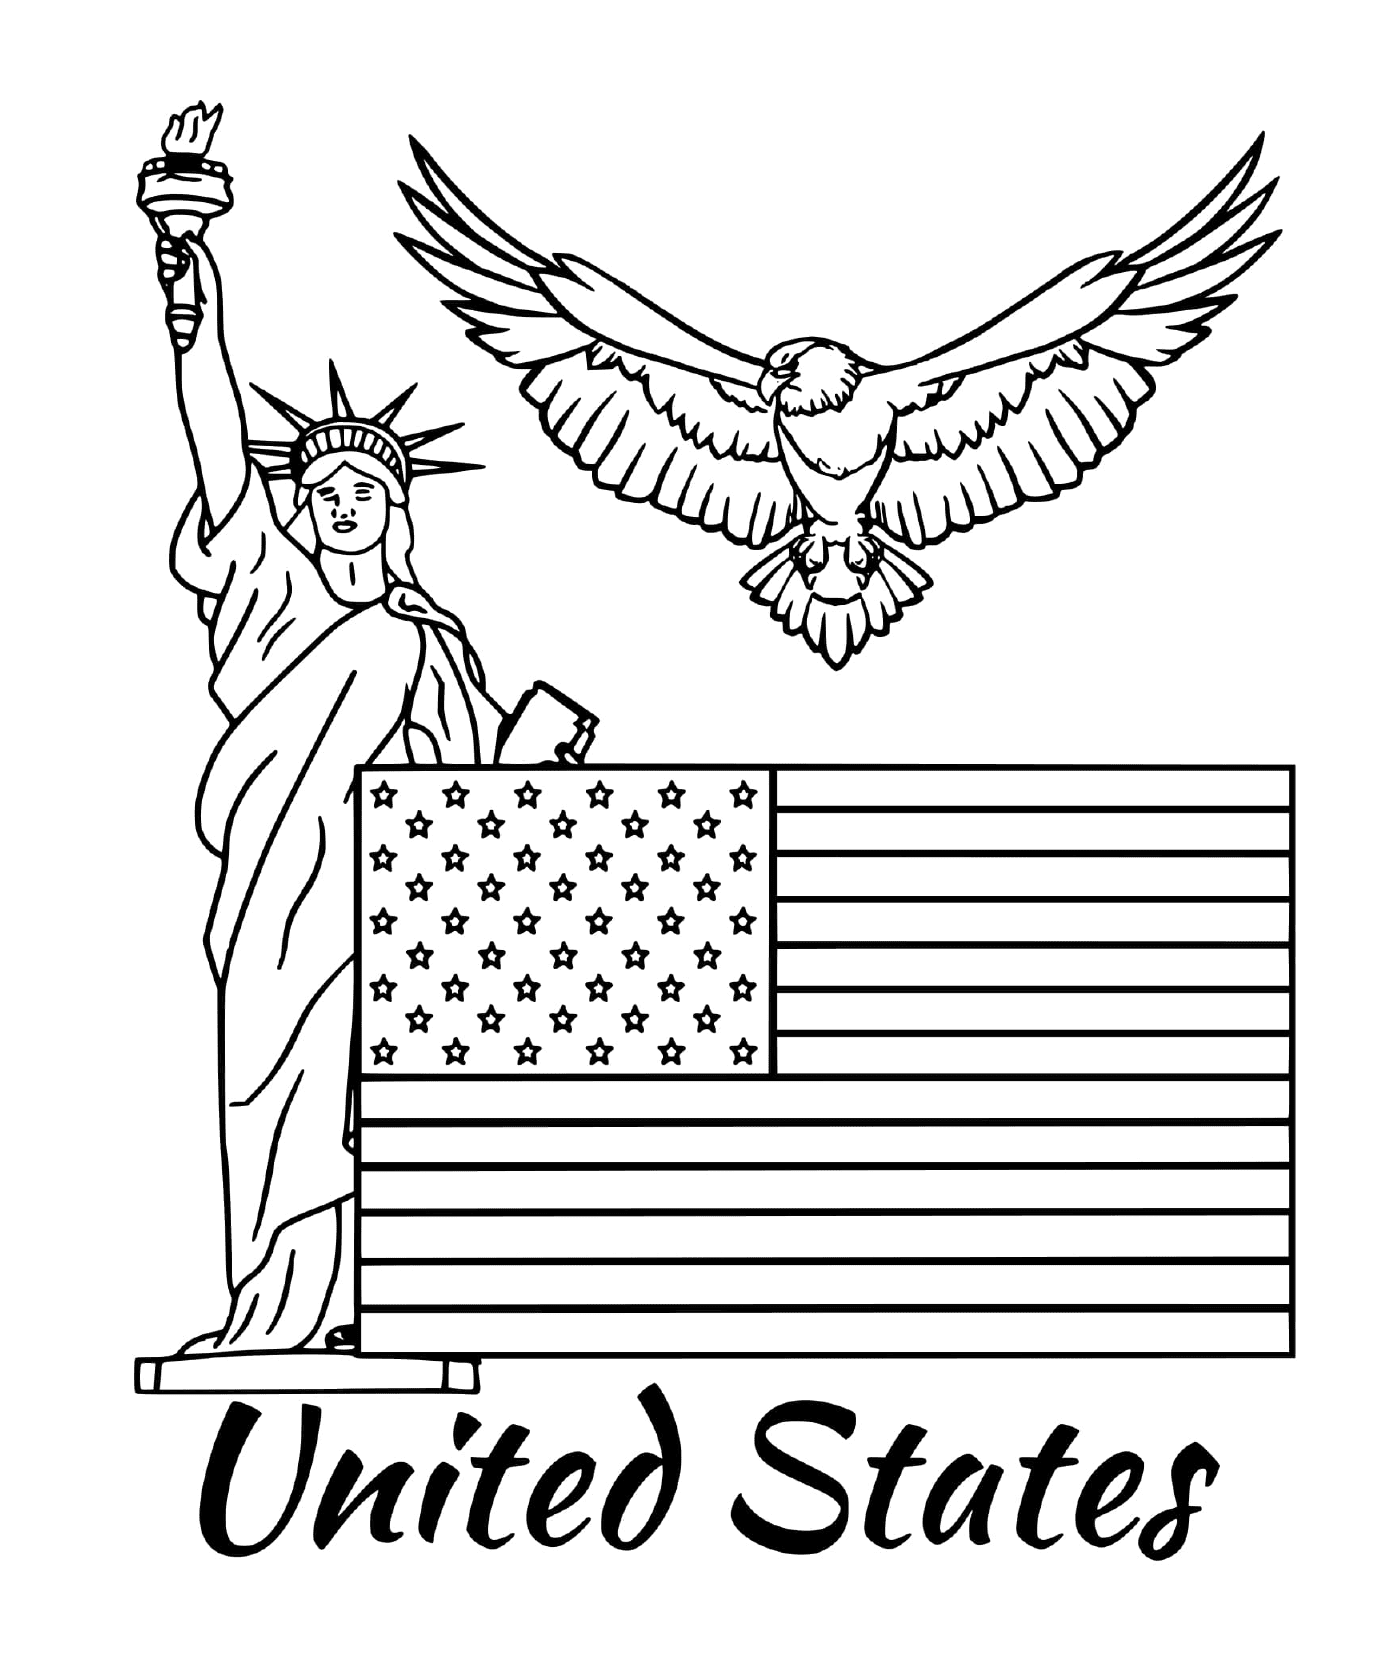  علم الولايات المتحدة الأمريكية 